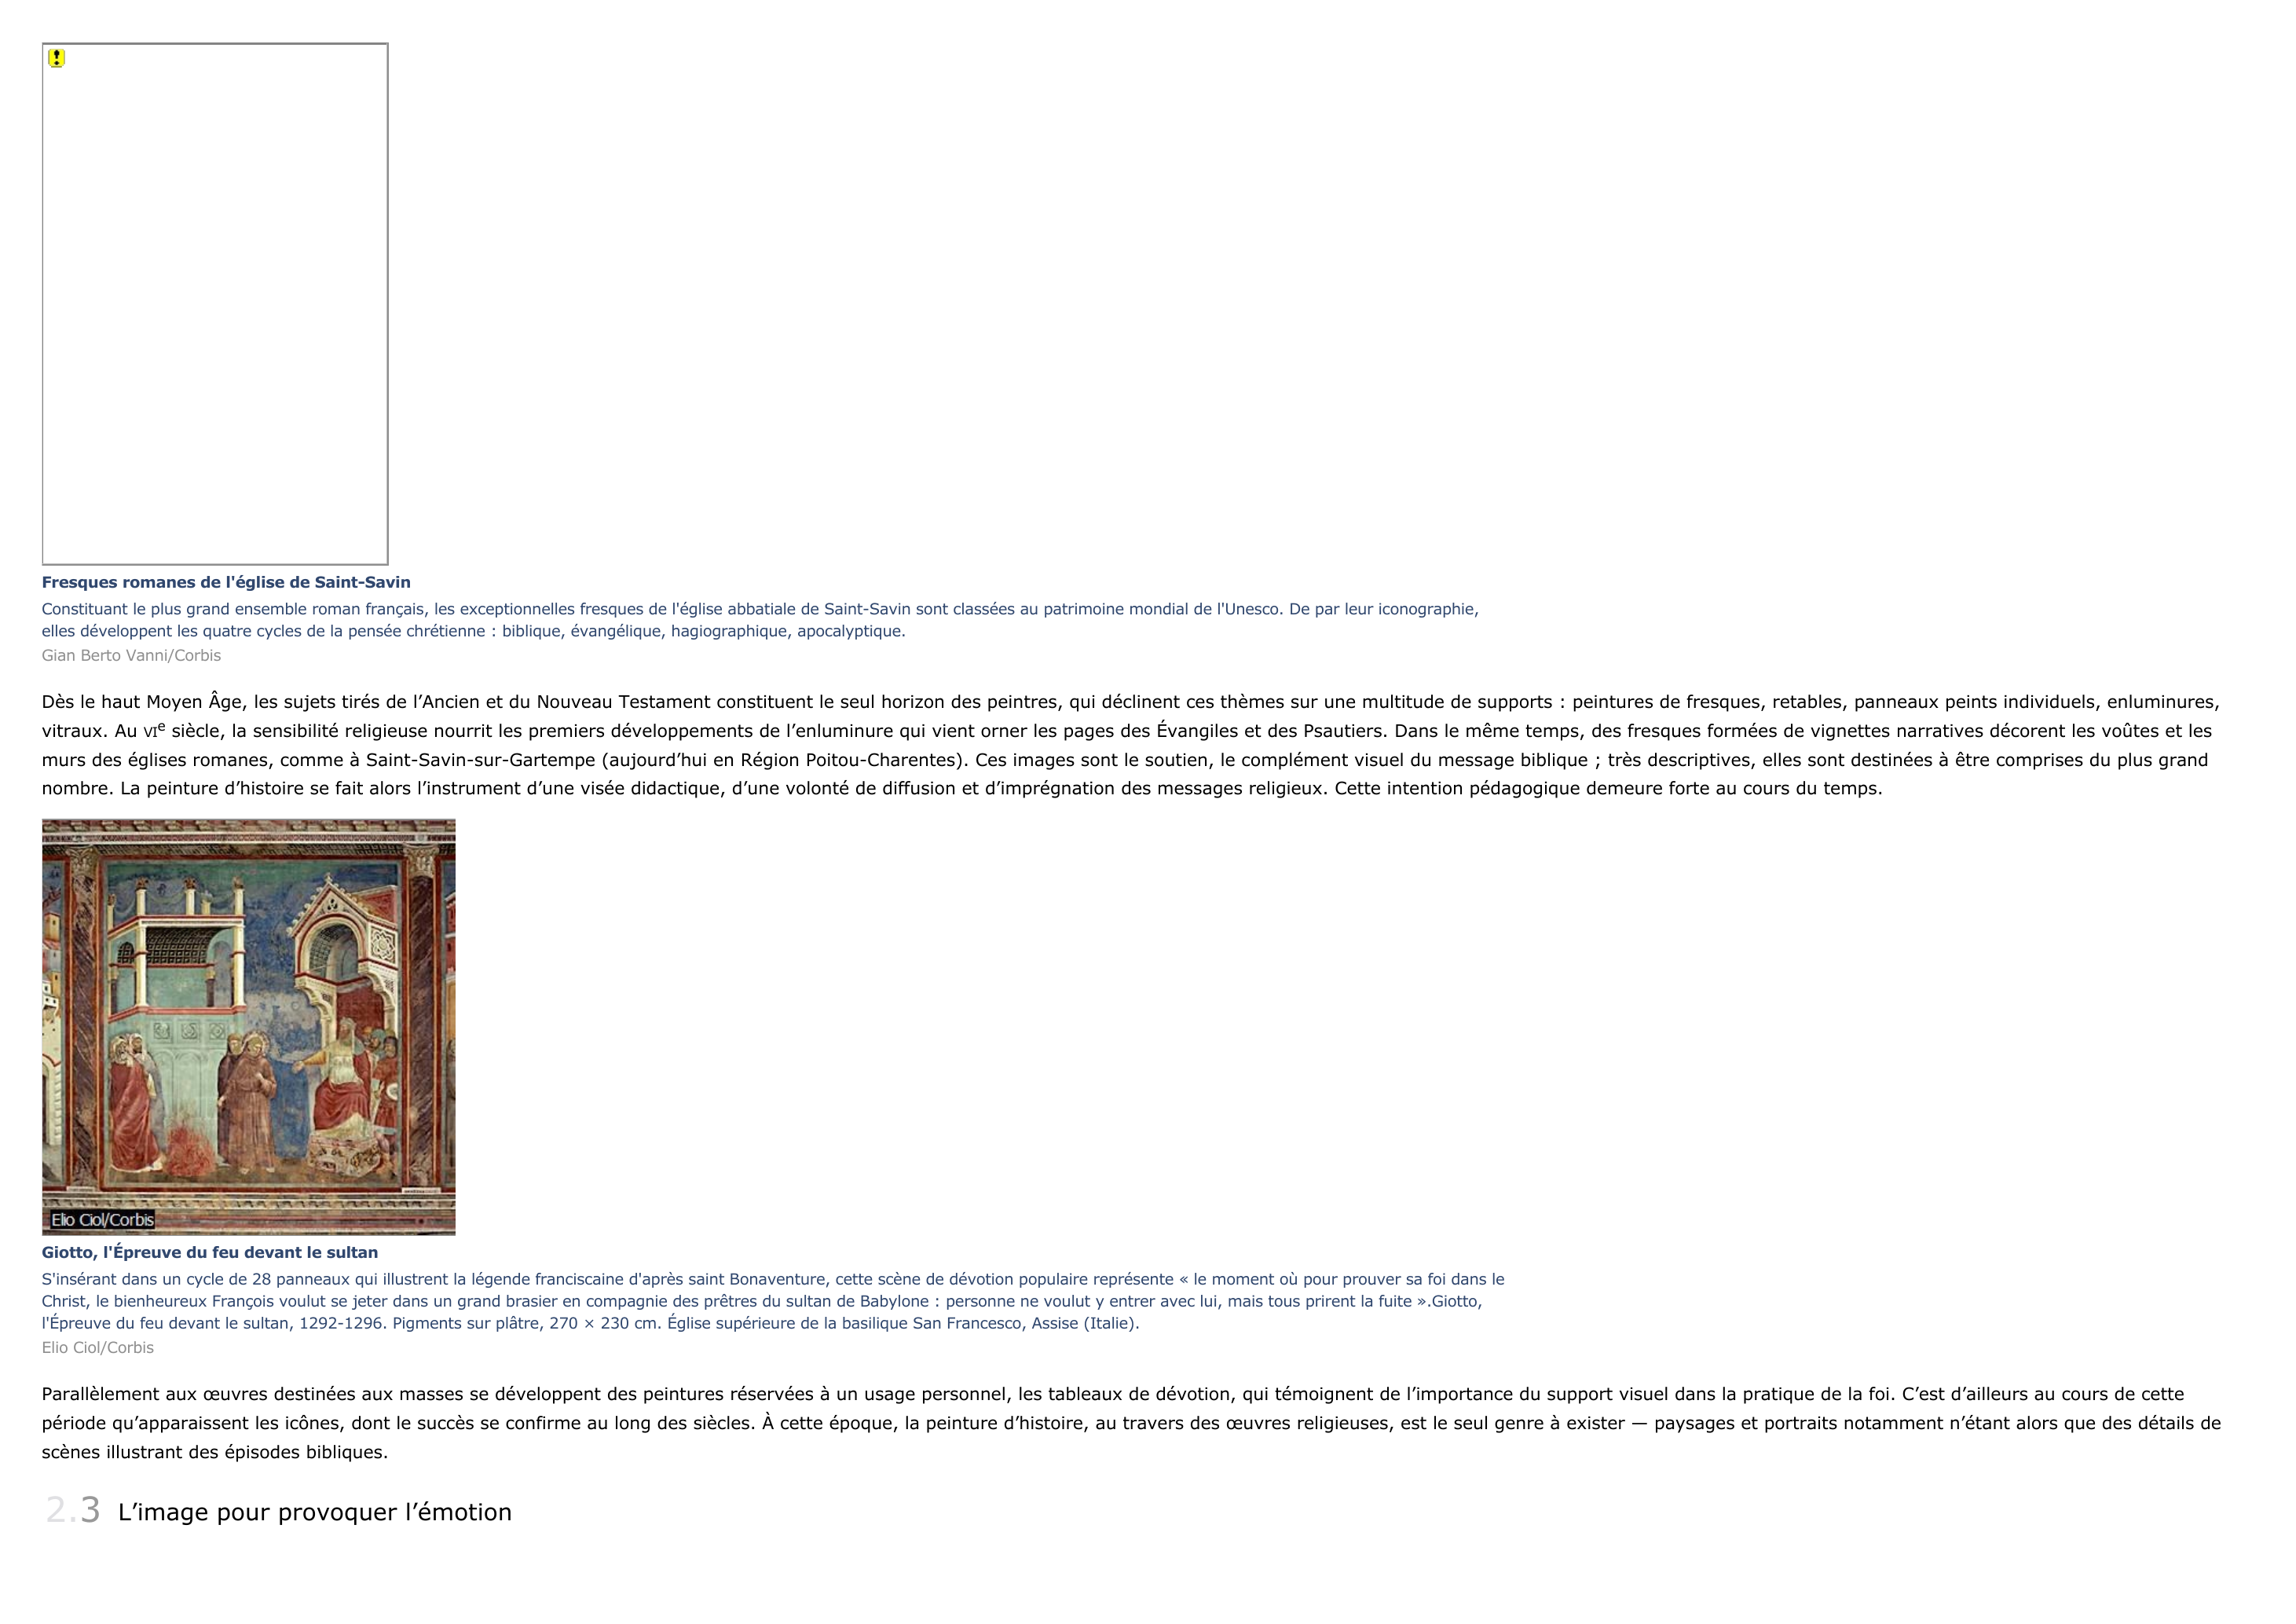 Prévisualisation du document histoire, peinture d'
1

PRÉSENTATION

Géricault, le Radeau de la Méduse
Tout en s'inscrivant dans la lignée des grands tableaux d'histoire de l'école de David, cette oeuvre est unique par son ampleur, l'audace de sa composition et la puissance morbide de ses couleurs.